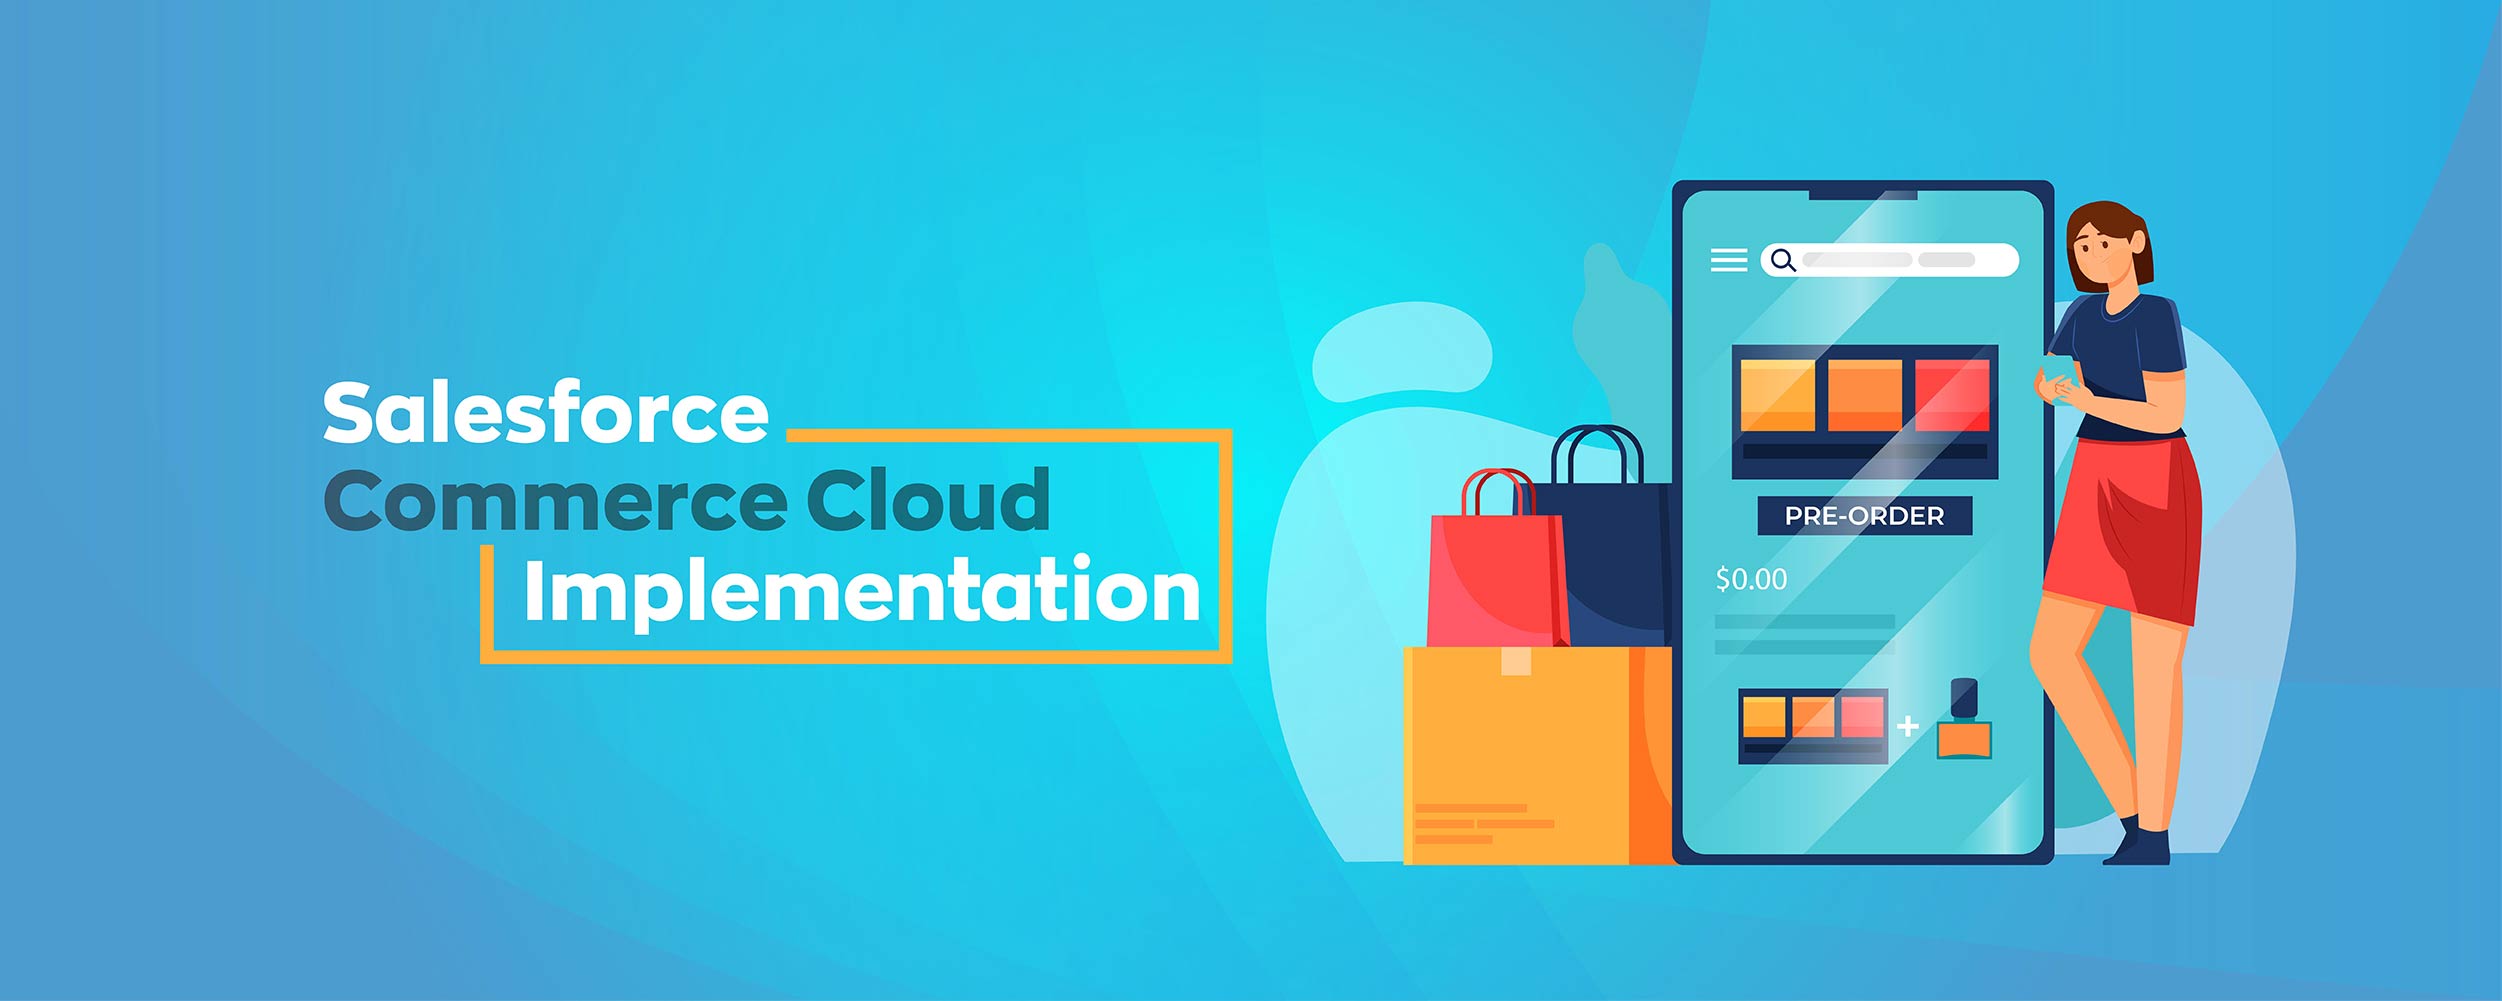 salesforce commerce cloud implementation